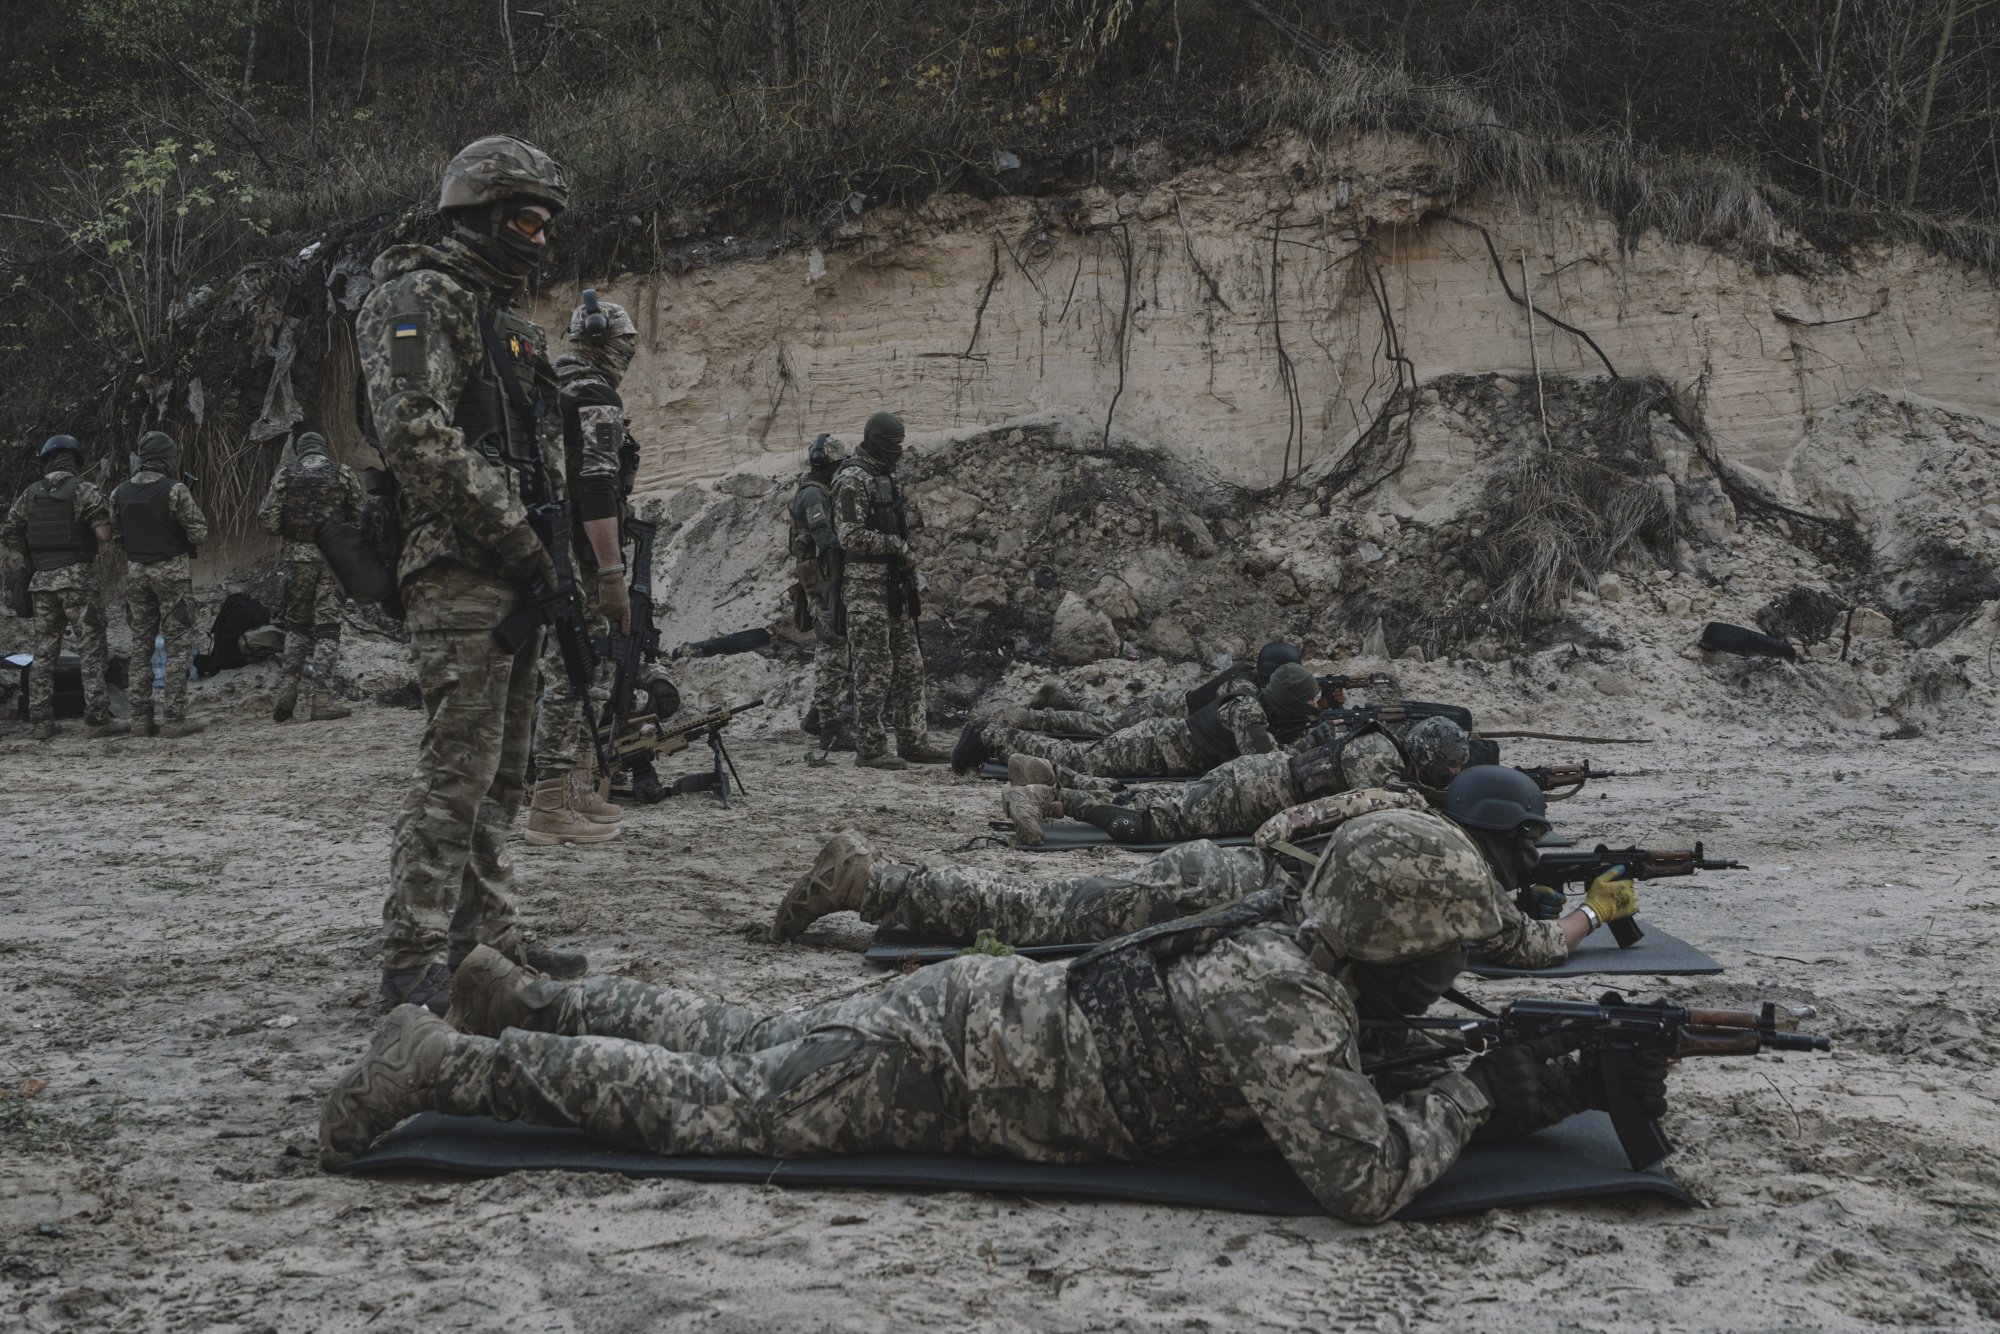 Бійці батальйону "Сибір" відпрацьовують стрільбу під час військових навчань. Фотограф: Андрій Кравченко/Bloomberg